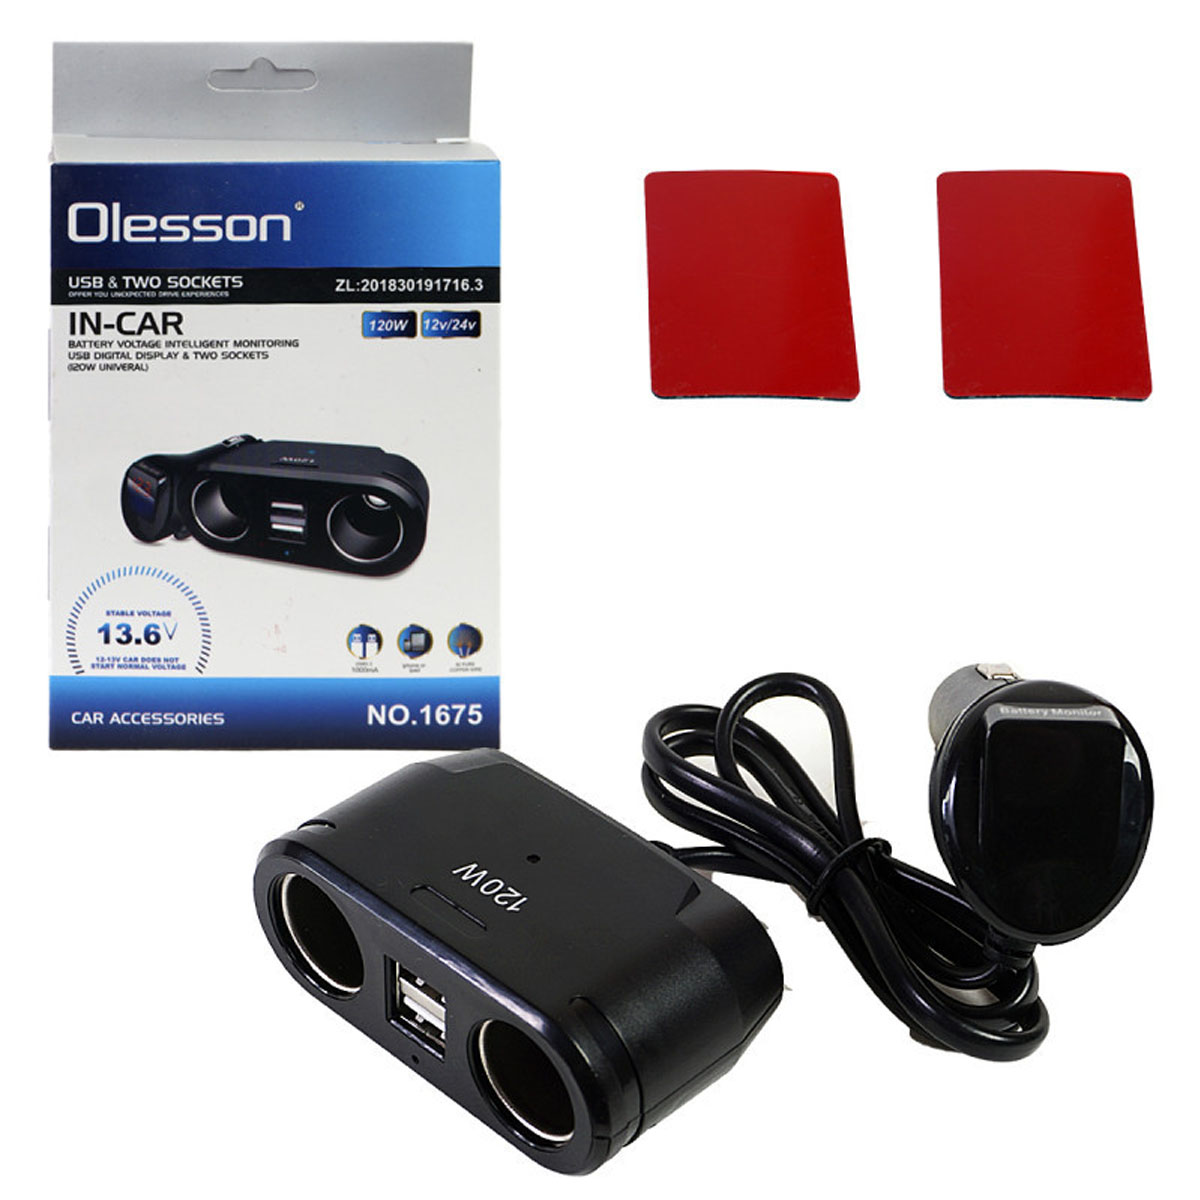 Автомобильный разветвитель OLESSON 1675 120W, 12/24V, 2 выхода прикуривателя, 2 USB, Led дисплей, цвет черный